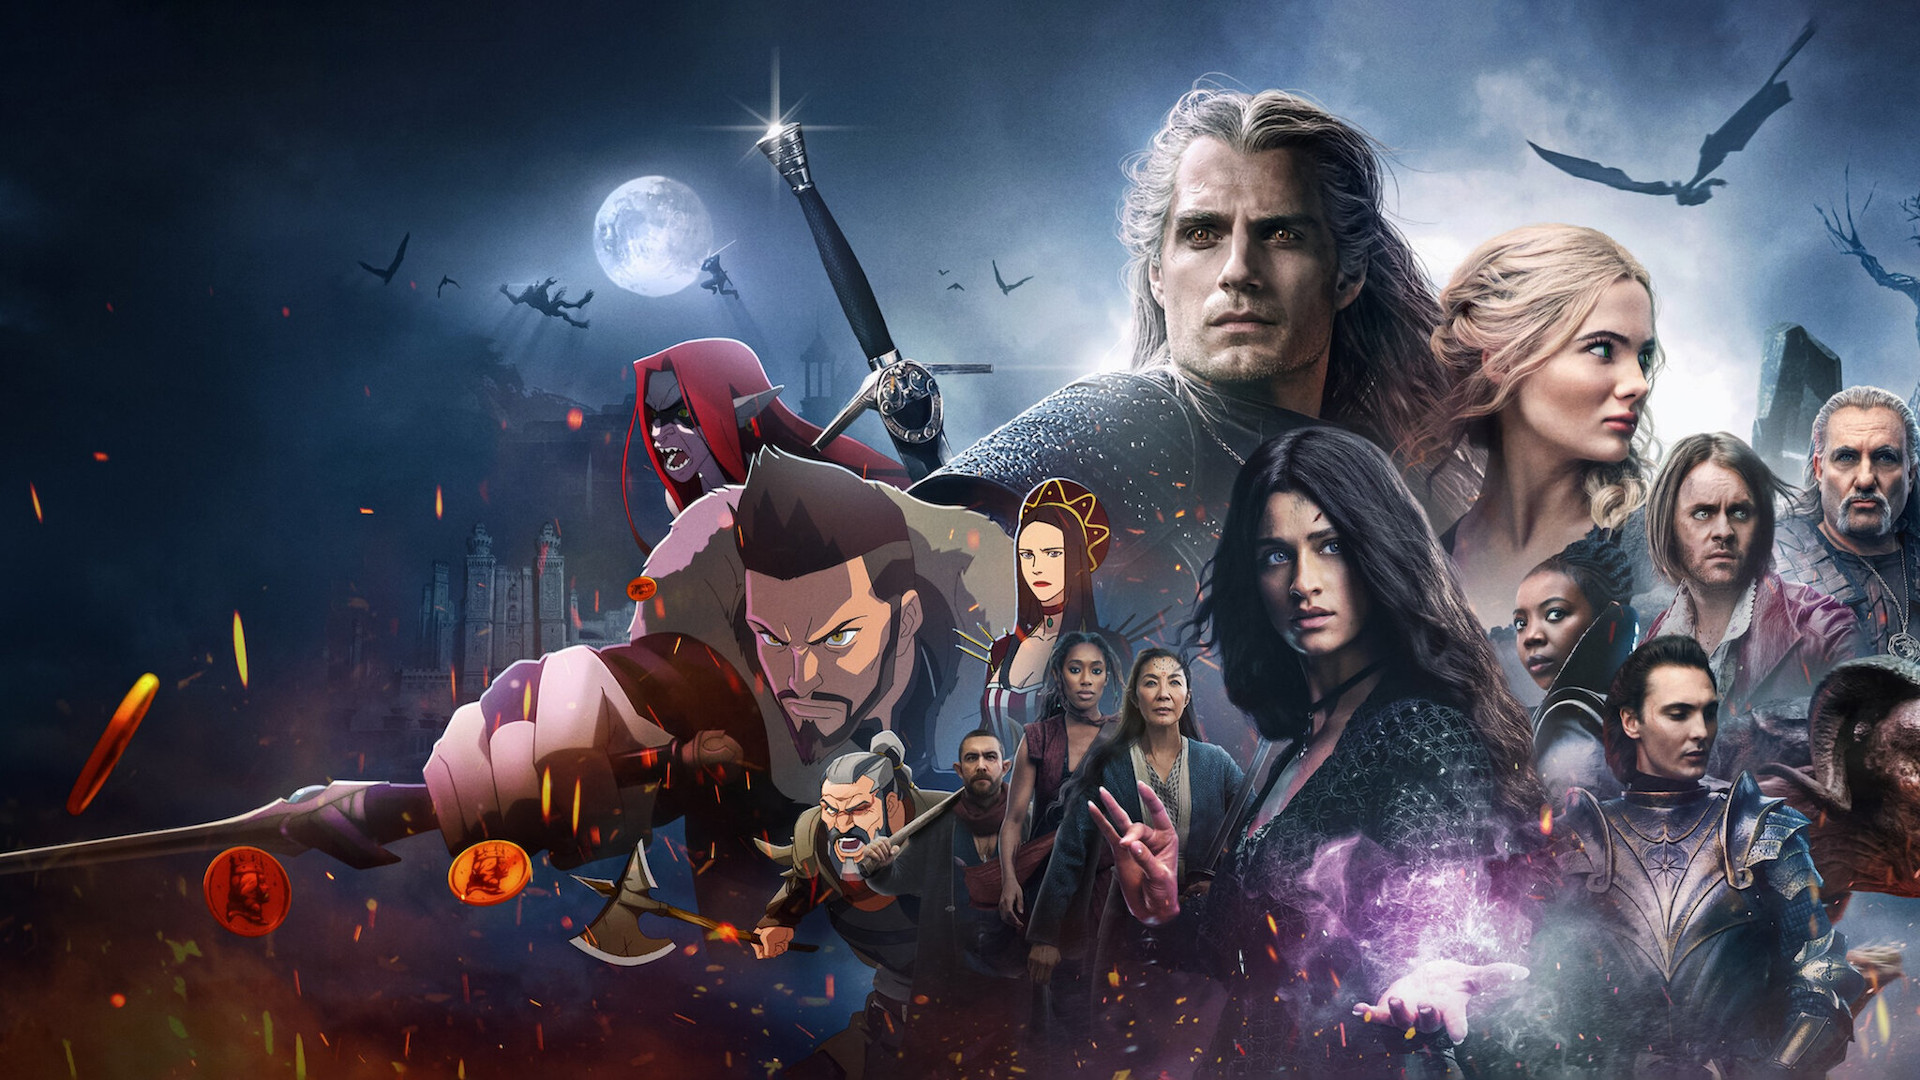 5η και τελευταία σεζόν για το The Witcher του Netflix